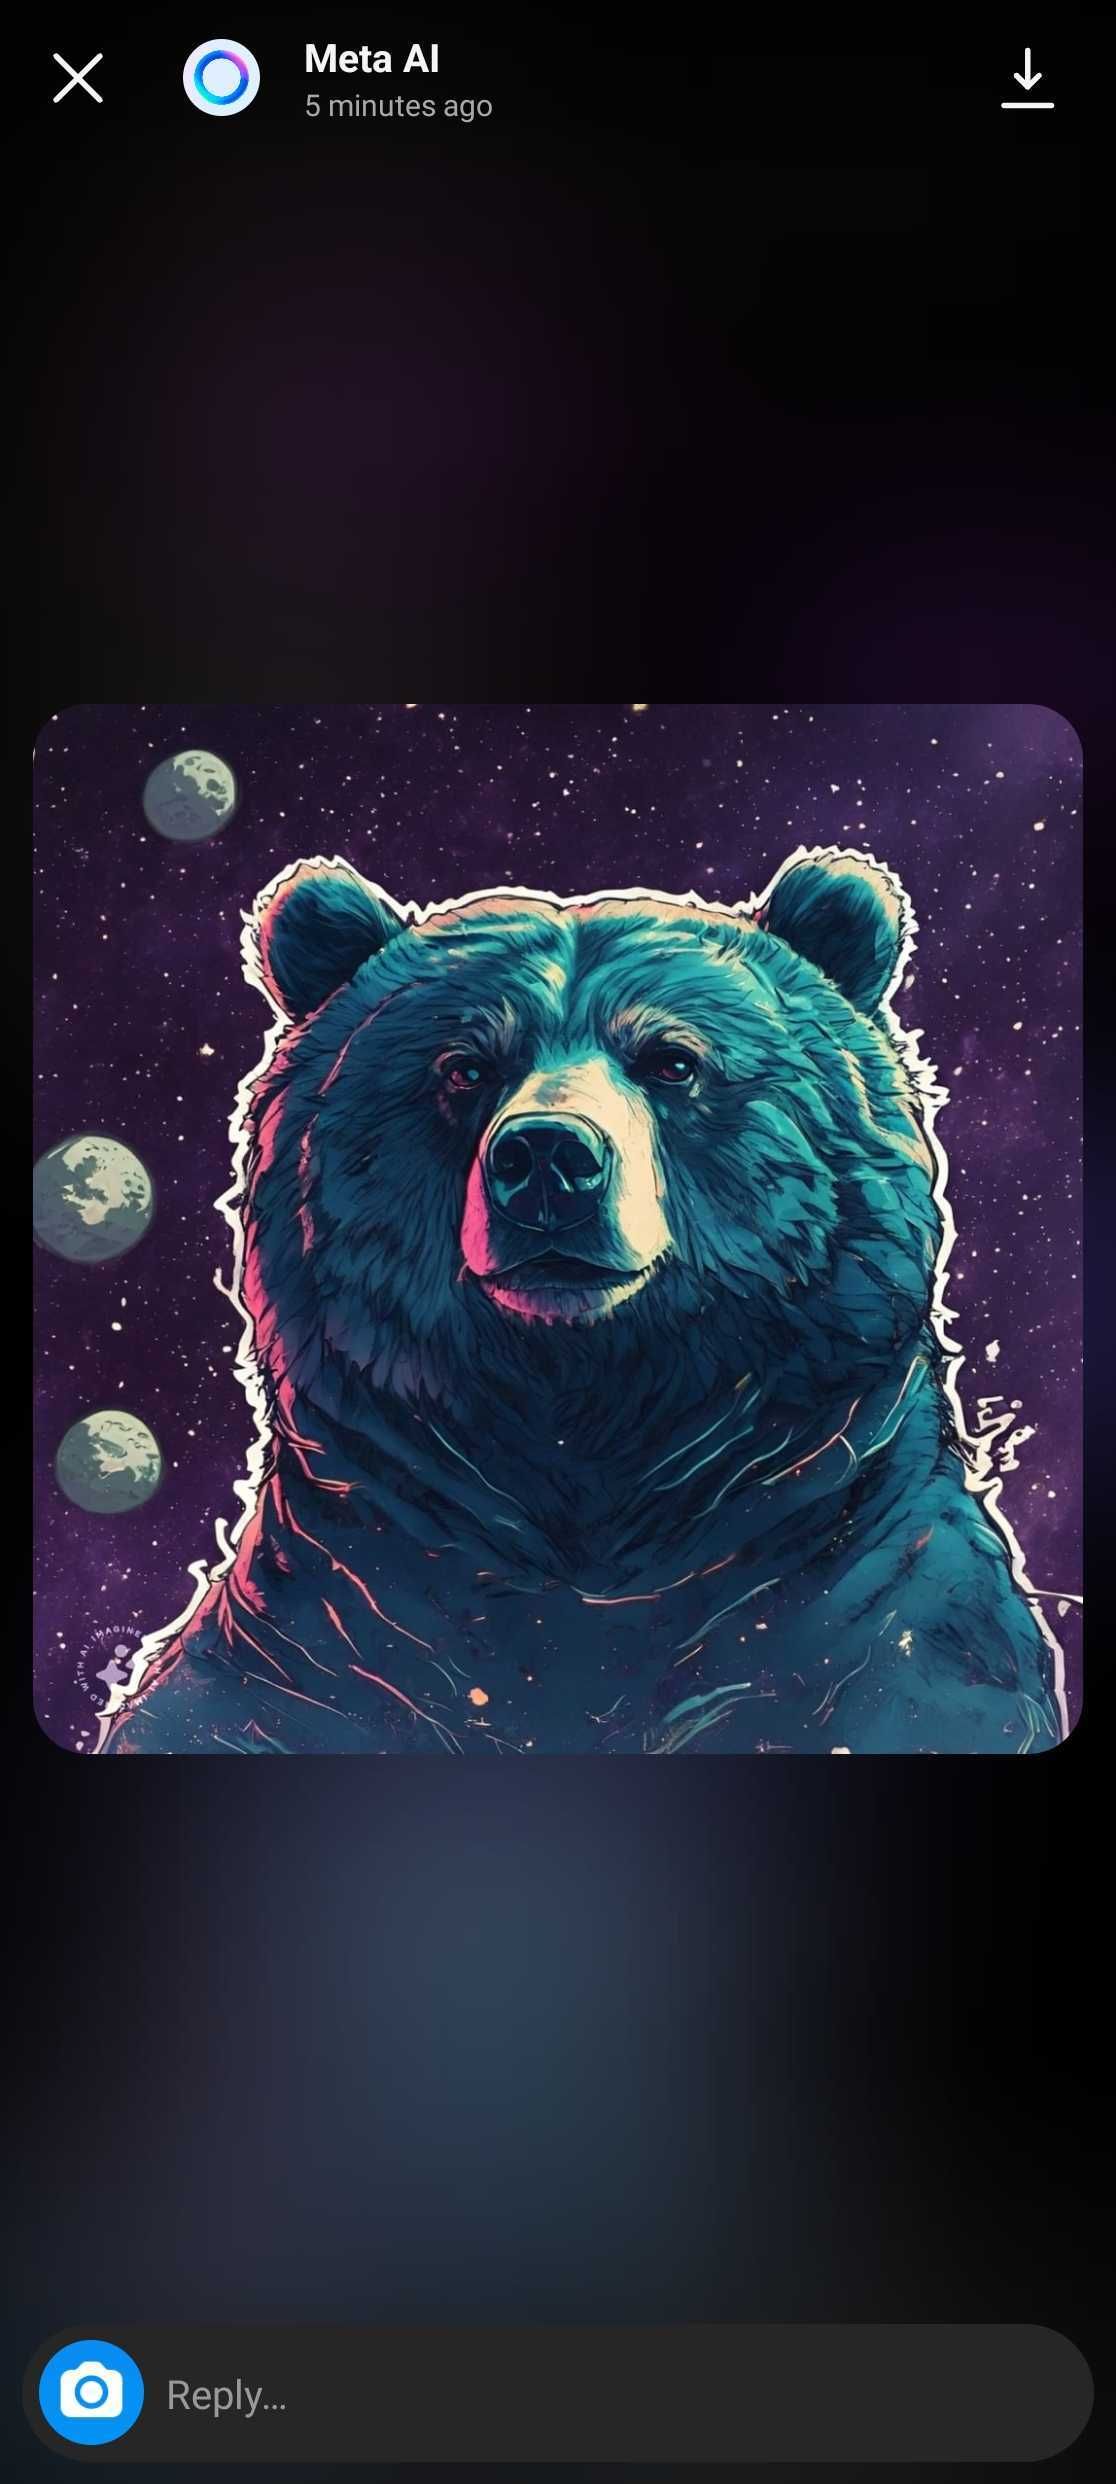 Captura de tela destacando o ícone de download na imagem de um urso